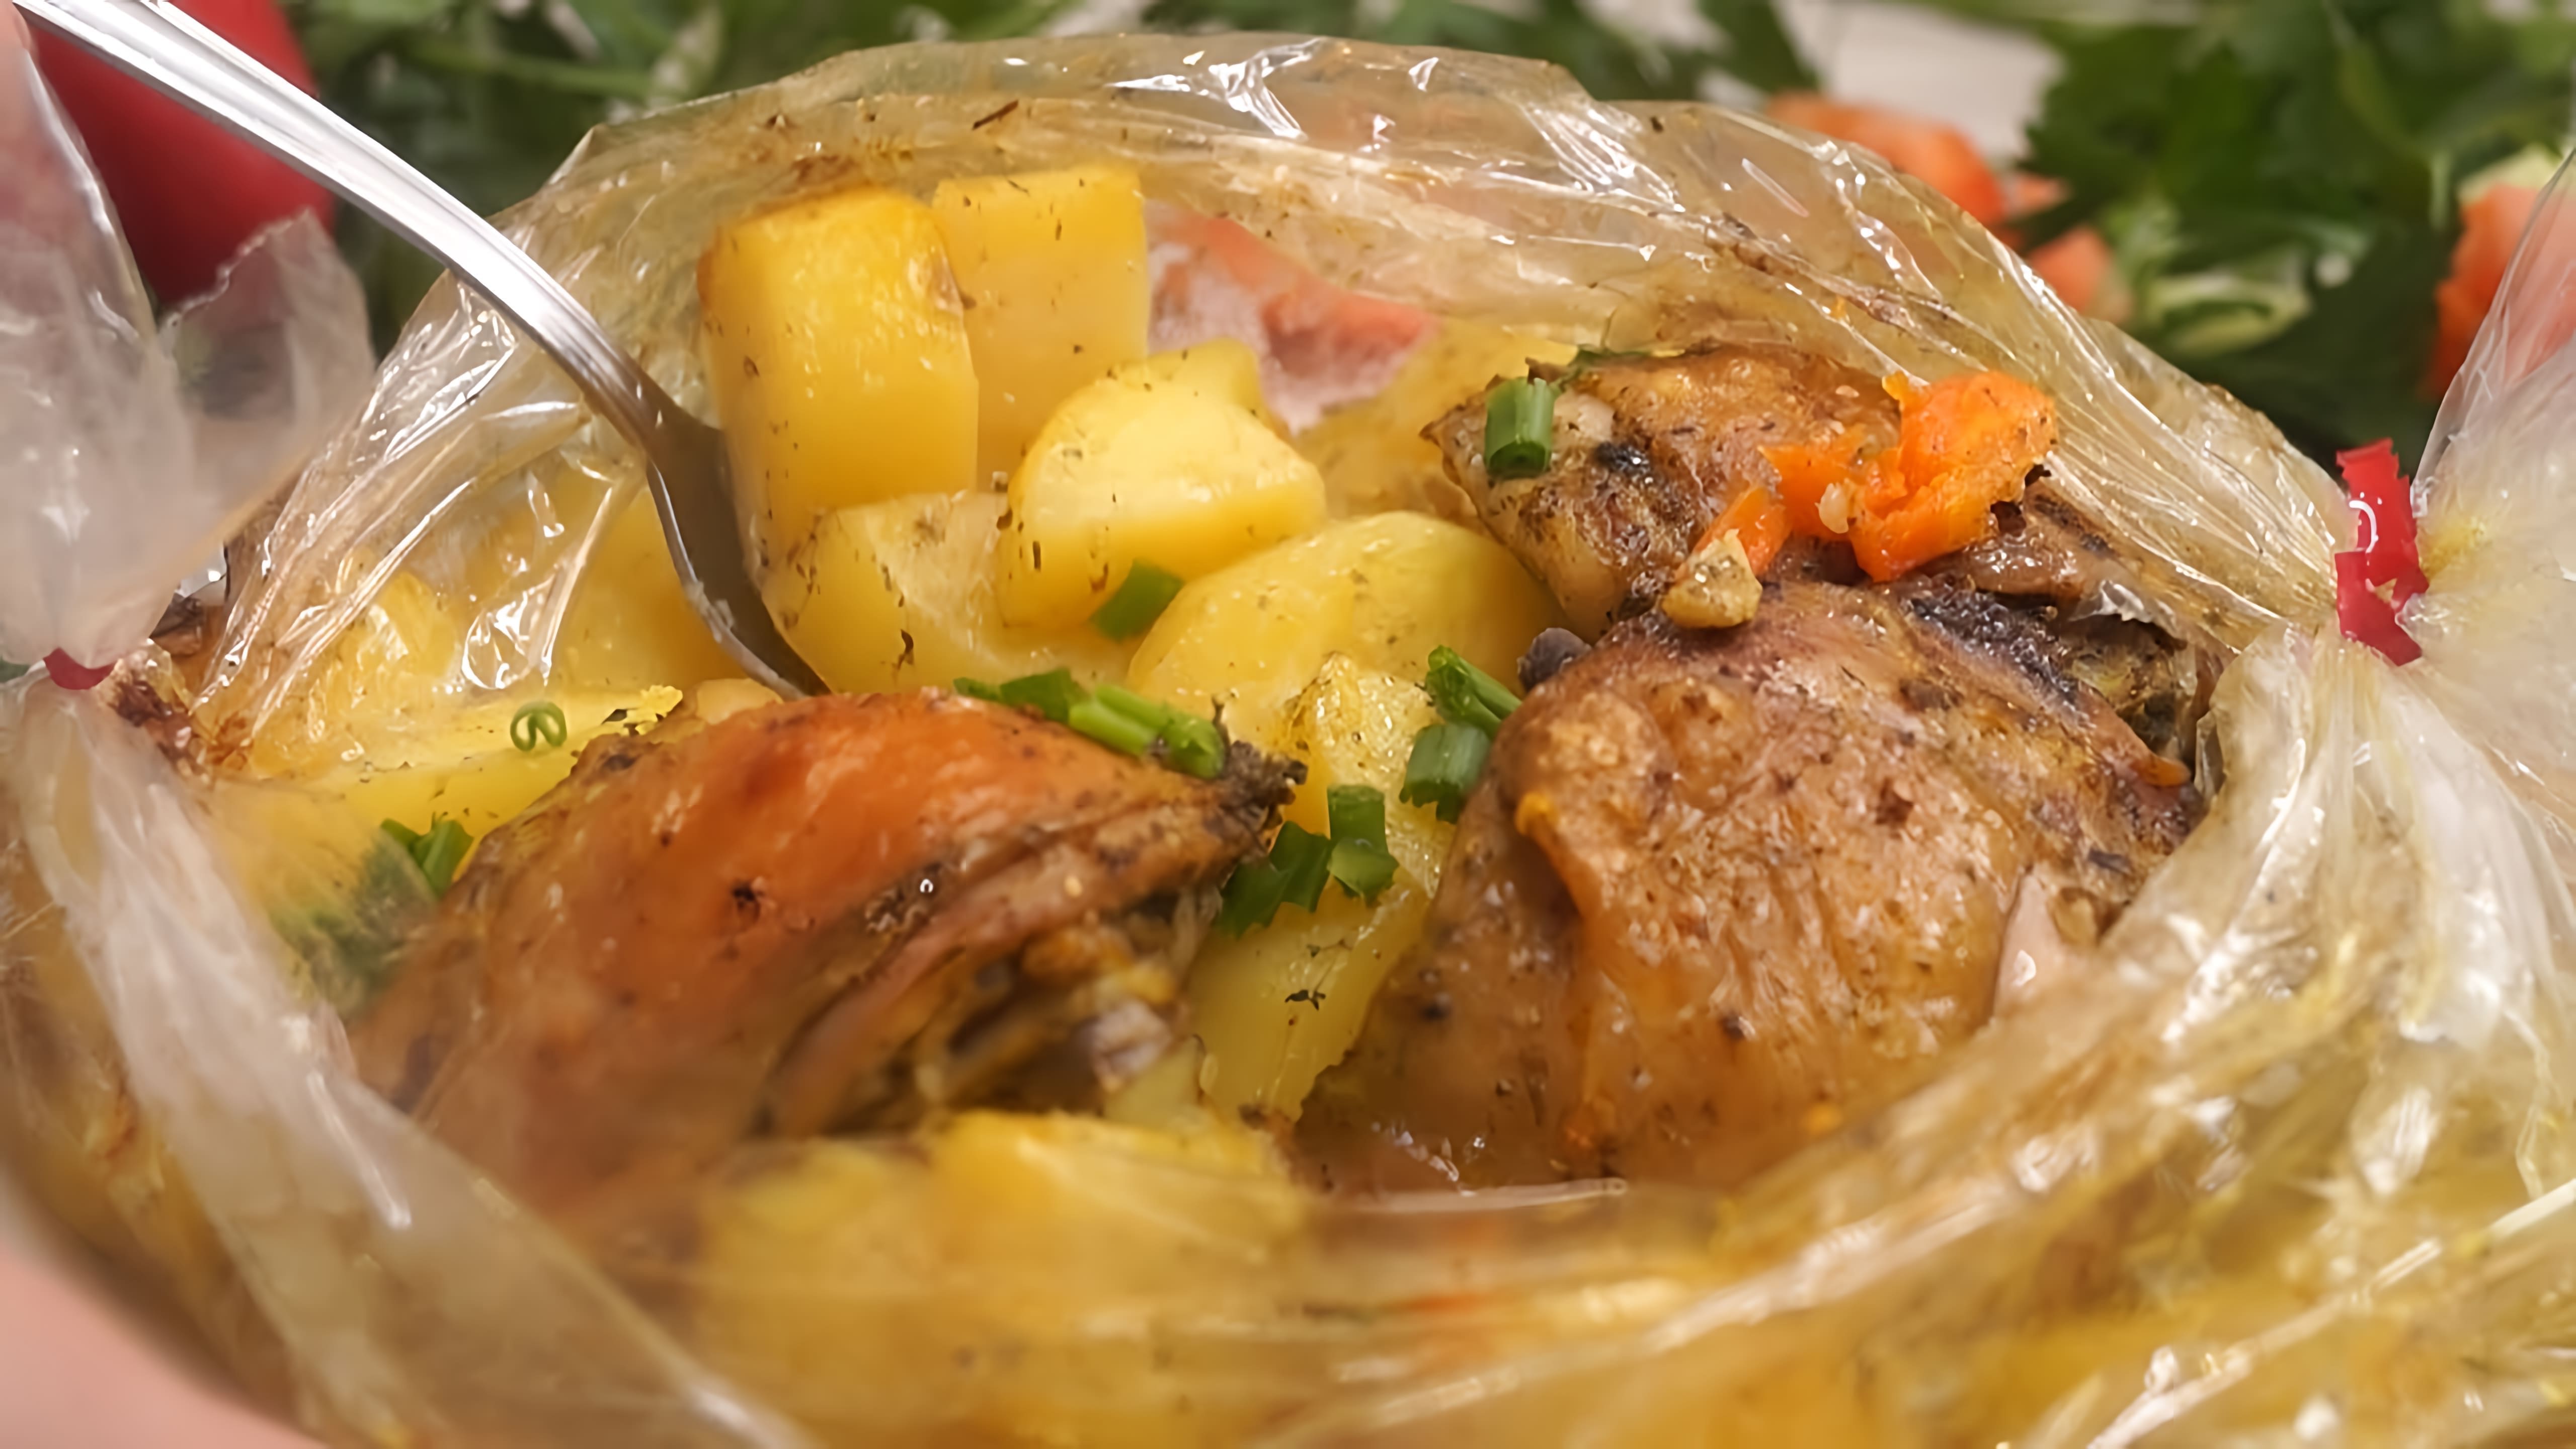 В этом видео демонстрируется рецепт приготовления мяса с картофелем в рукаве